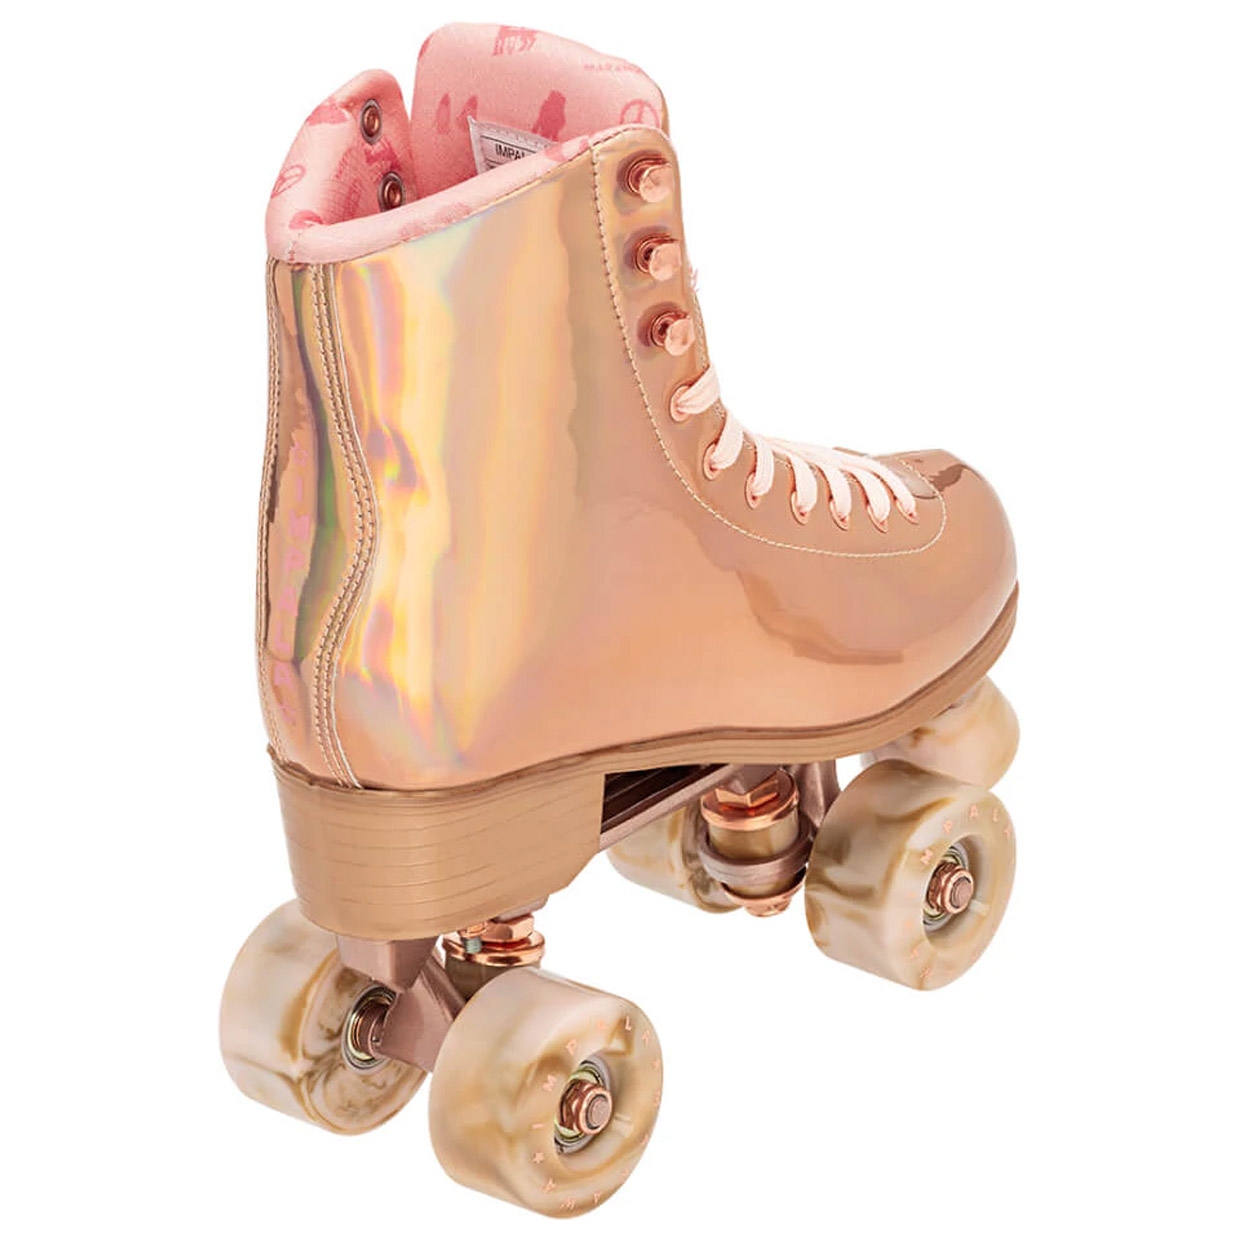 Damen Rollschuhe Squad Skate Marawa Rose Gold